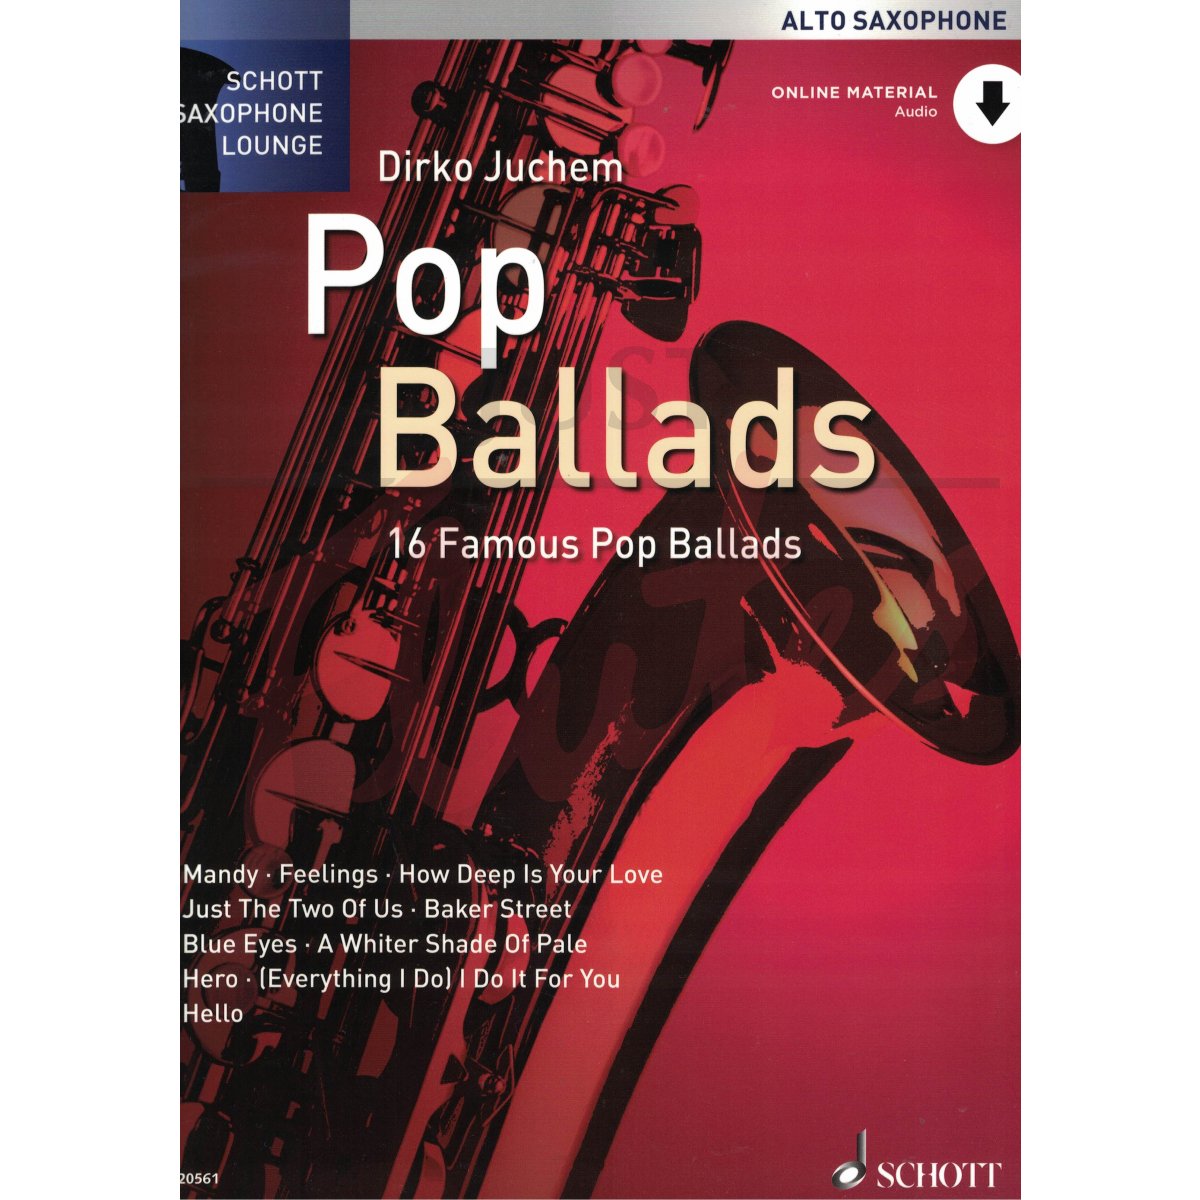 Schott Saxophone Lounge: Pop Ballads [Alto Sax]